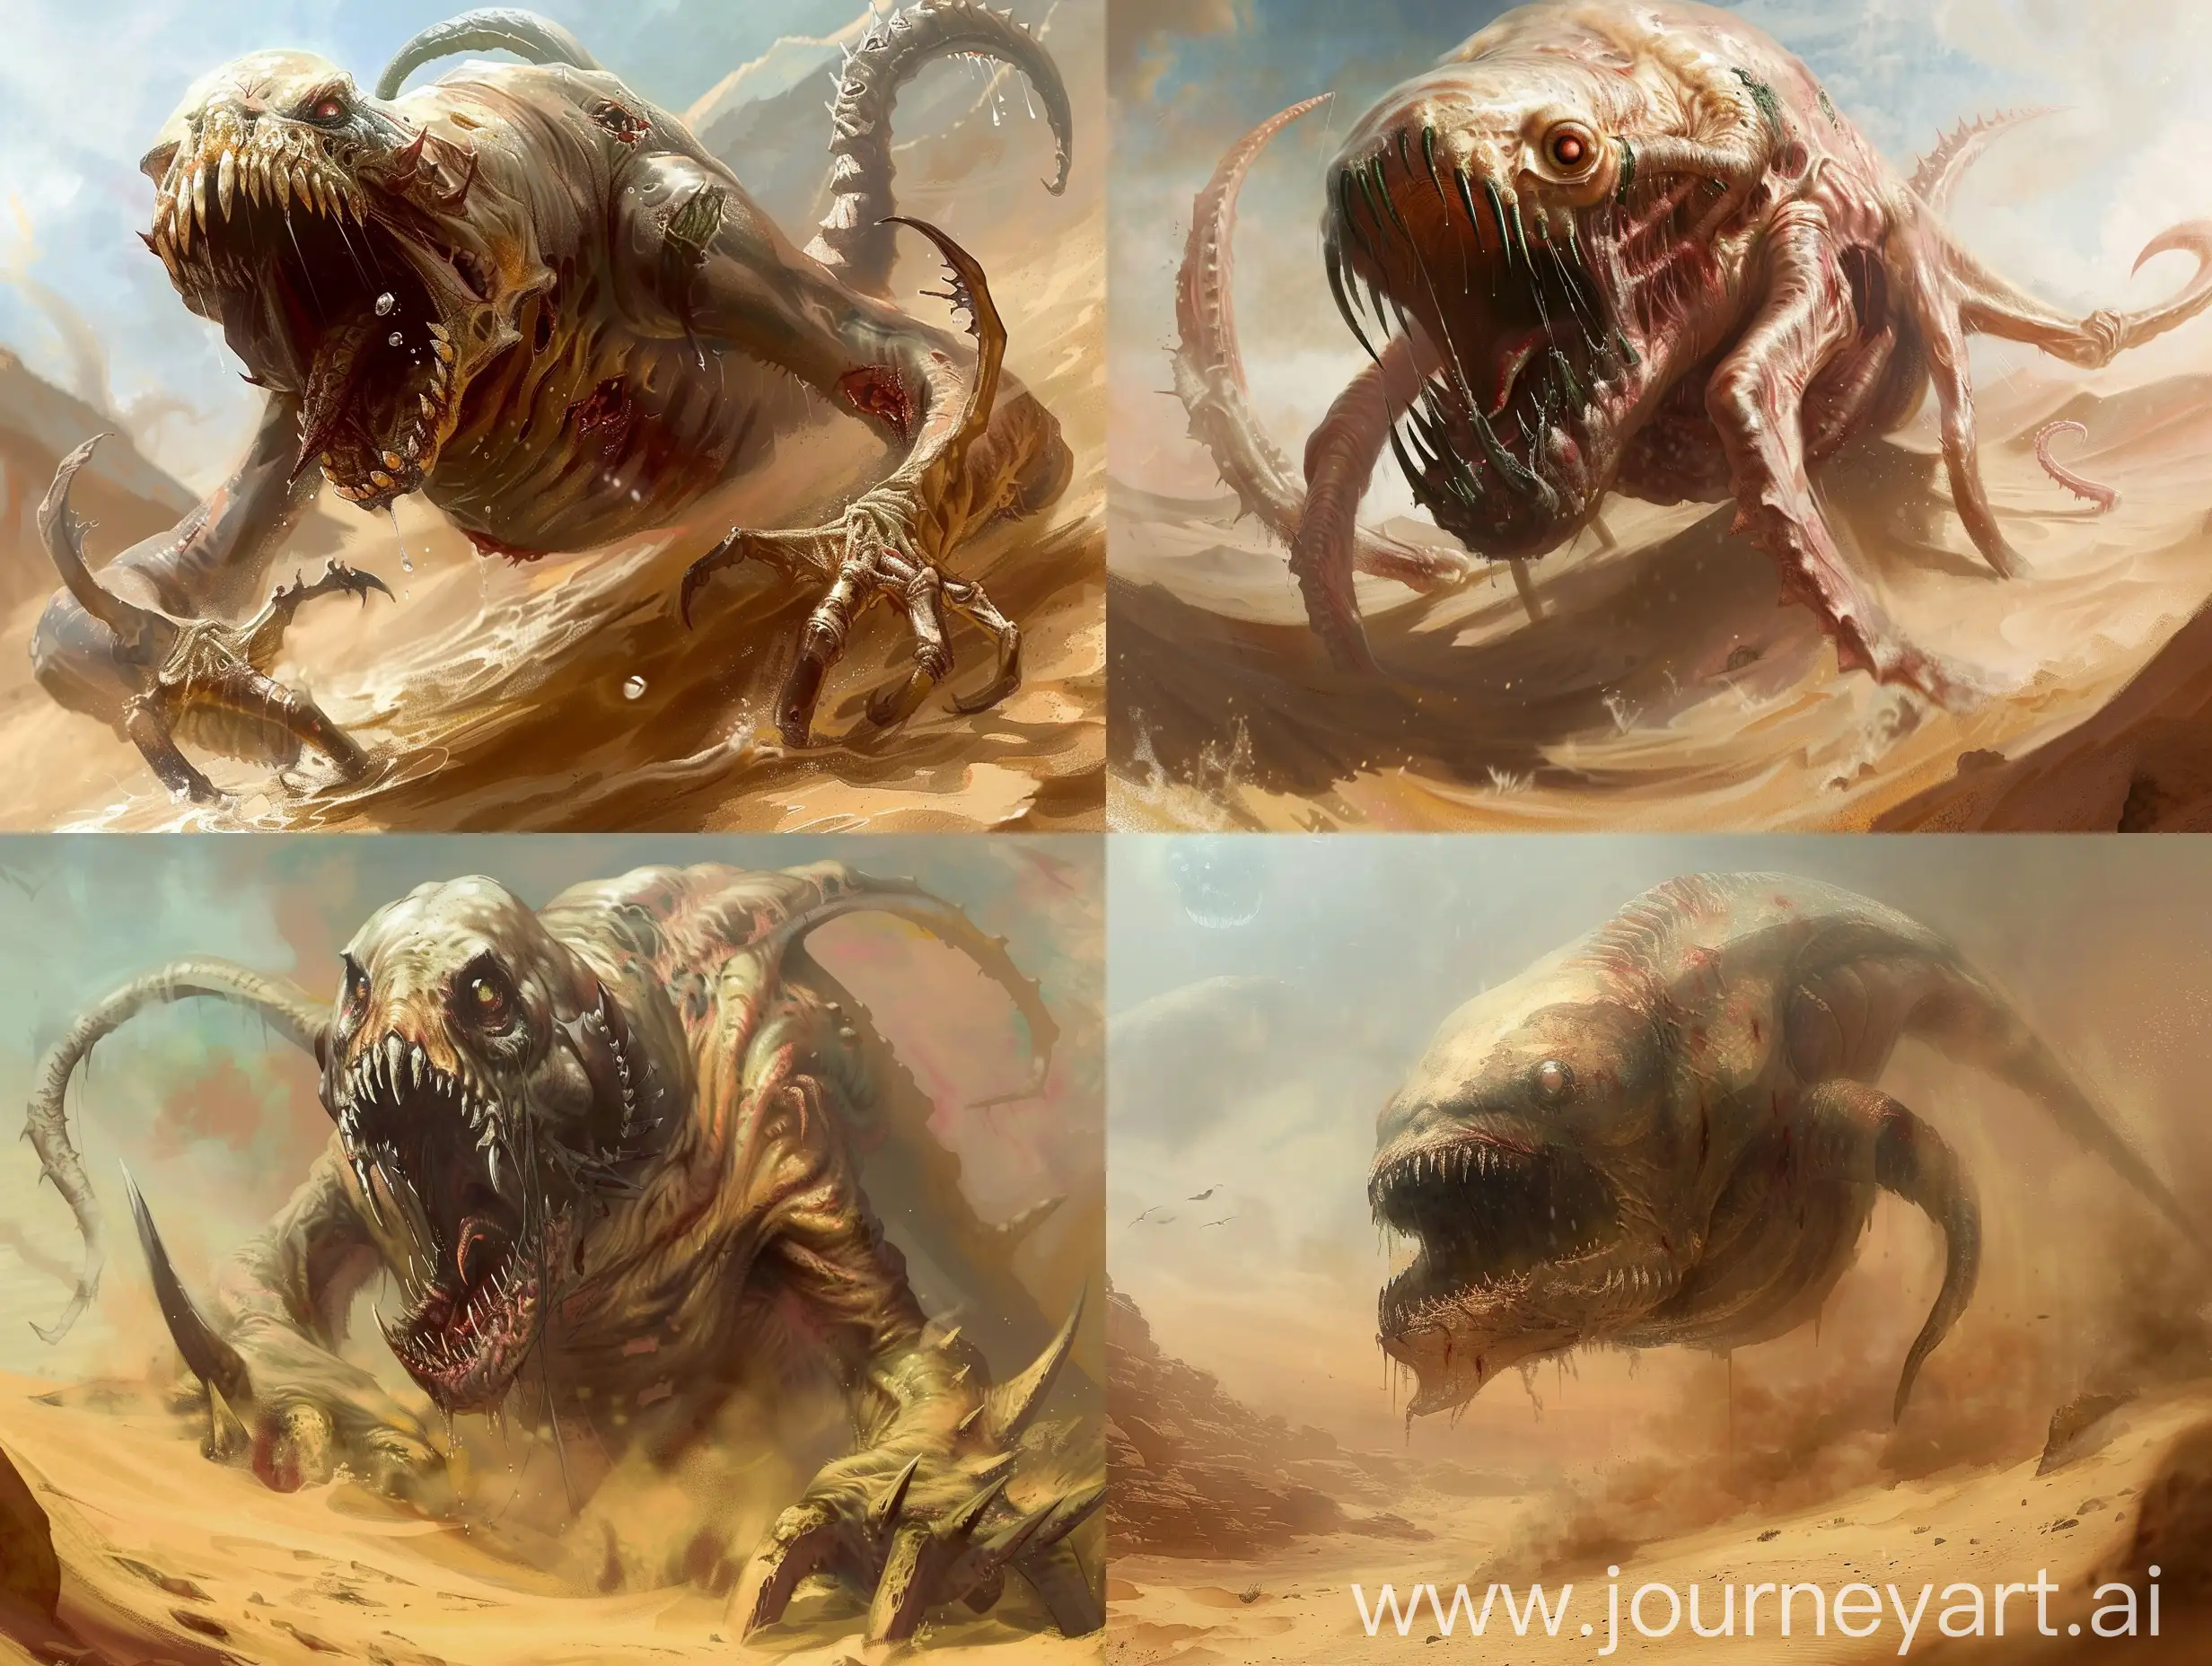 a gargantuan zombie kraken, swimming in a desert. Menacing and horrible, dungeons and dragons art styke